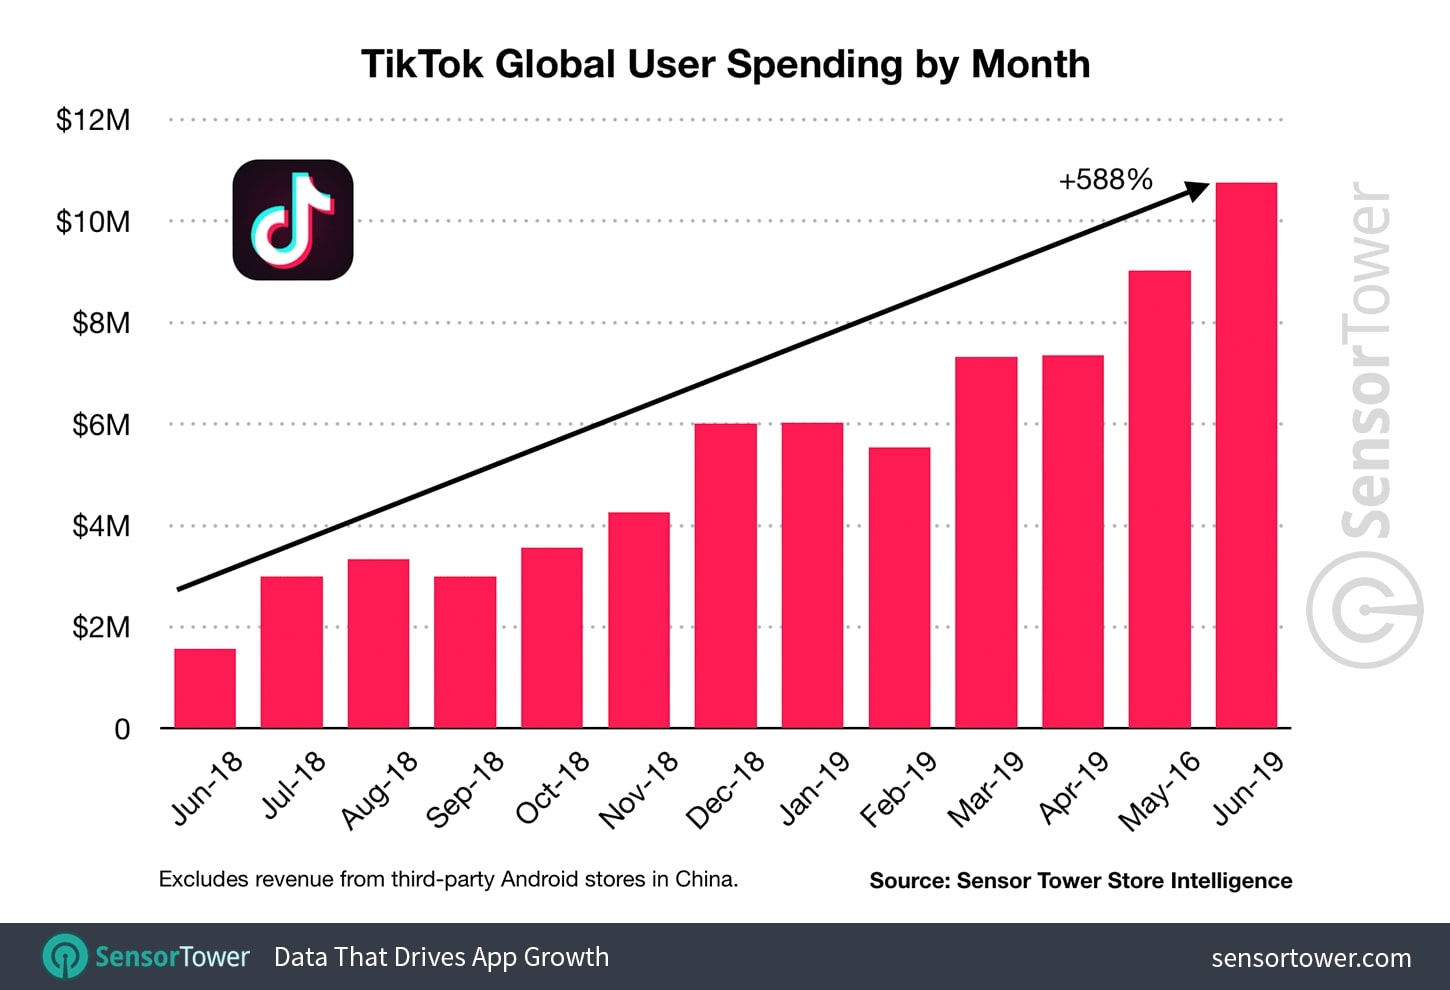 まずは基本を理解しよう。TikTokはビジネス・マーケティングに使えるか? Webマーケティングメディア「Grab」